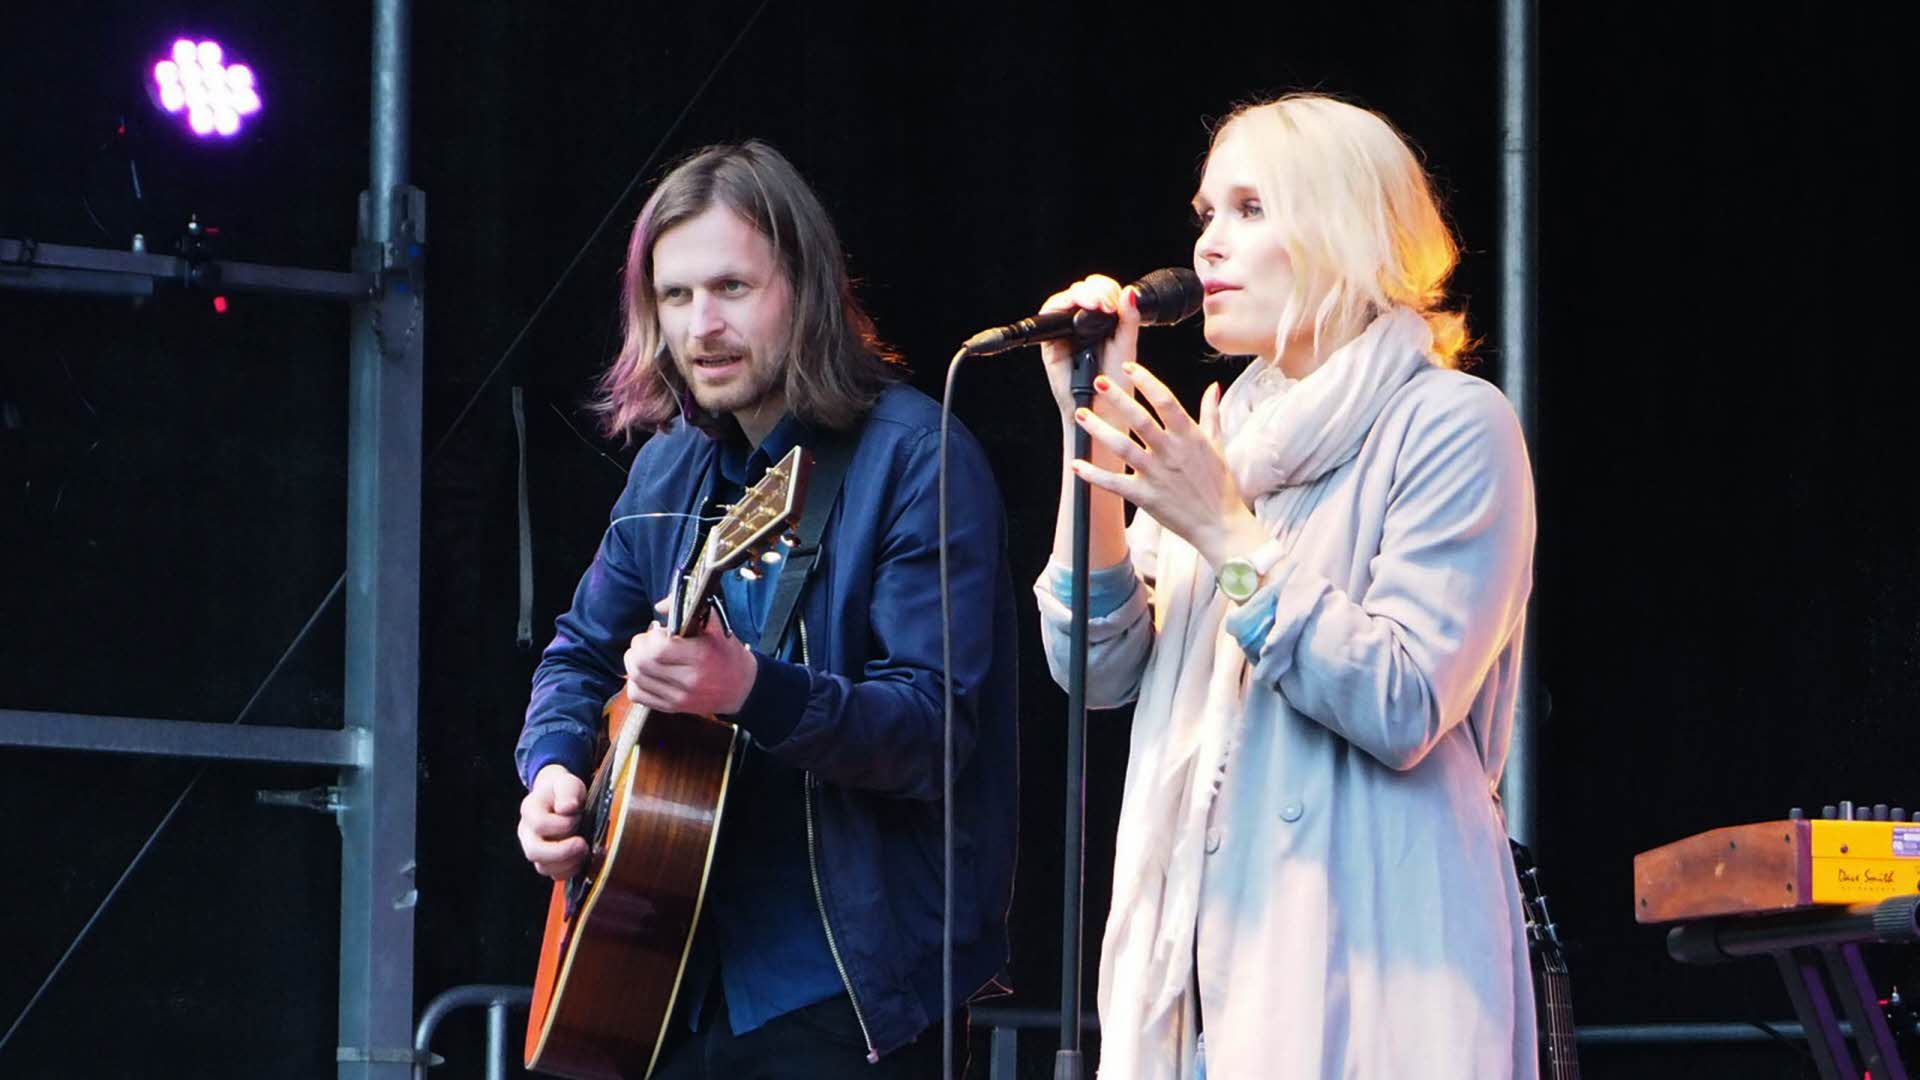 マイクで歌うブロンドの女性と、ステージでギターを弾く長い髪の男性。